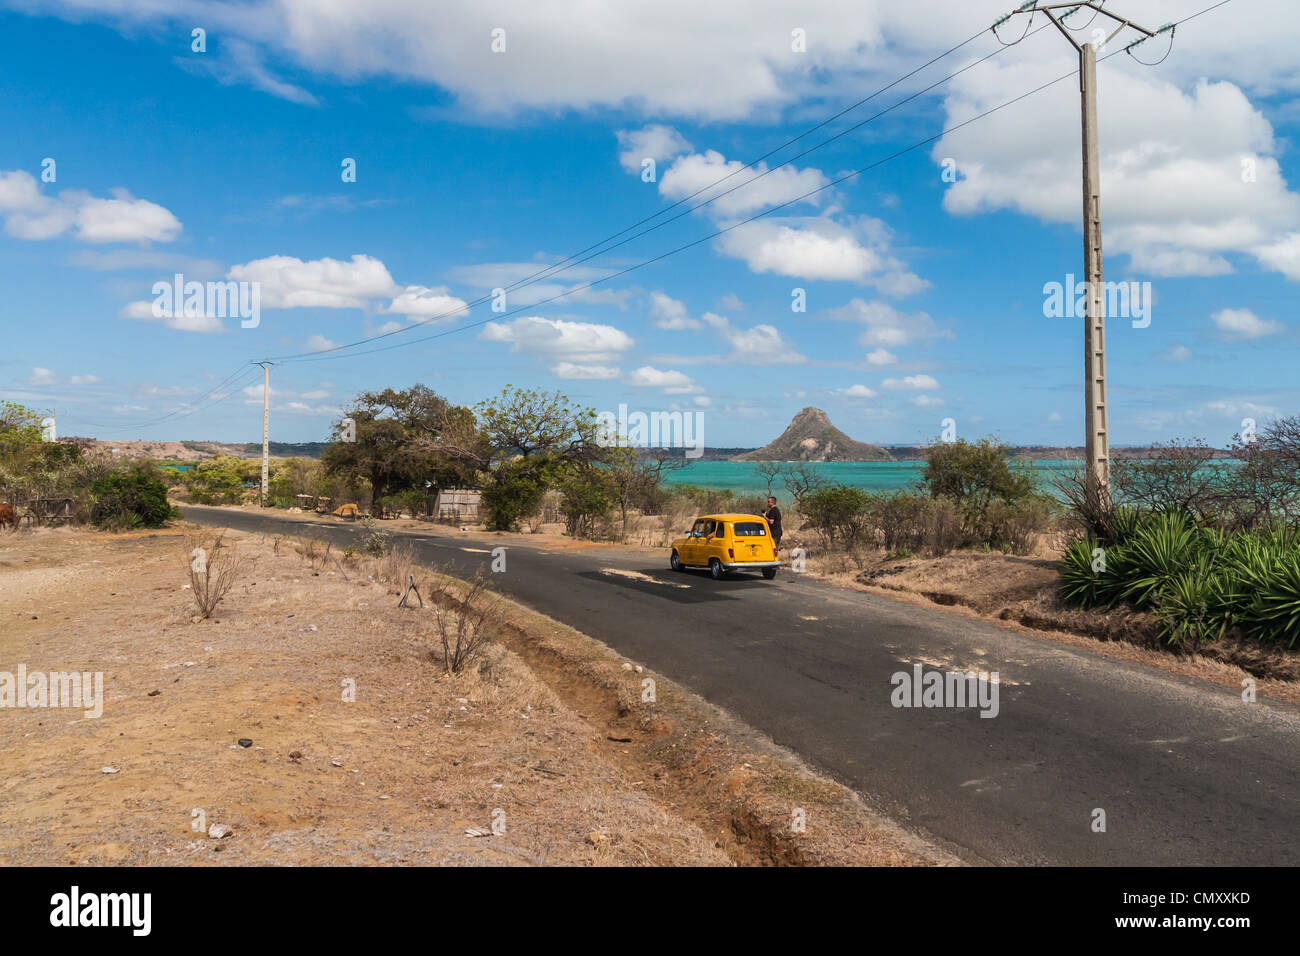 The road of Ramena, near Diego Suarez (Antsiranana), north of Madagascar Stock Photo